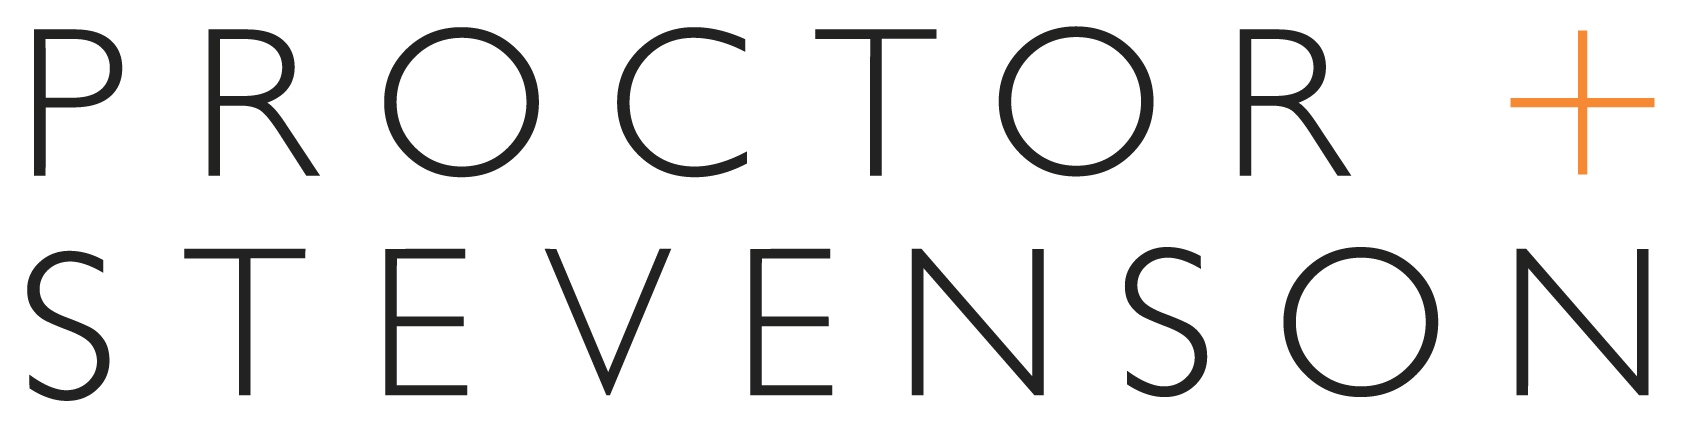 Proctor & Stevenson Ltd